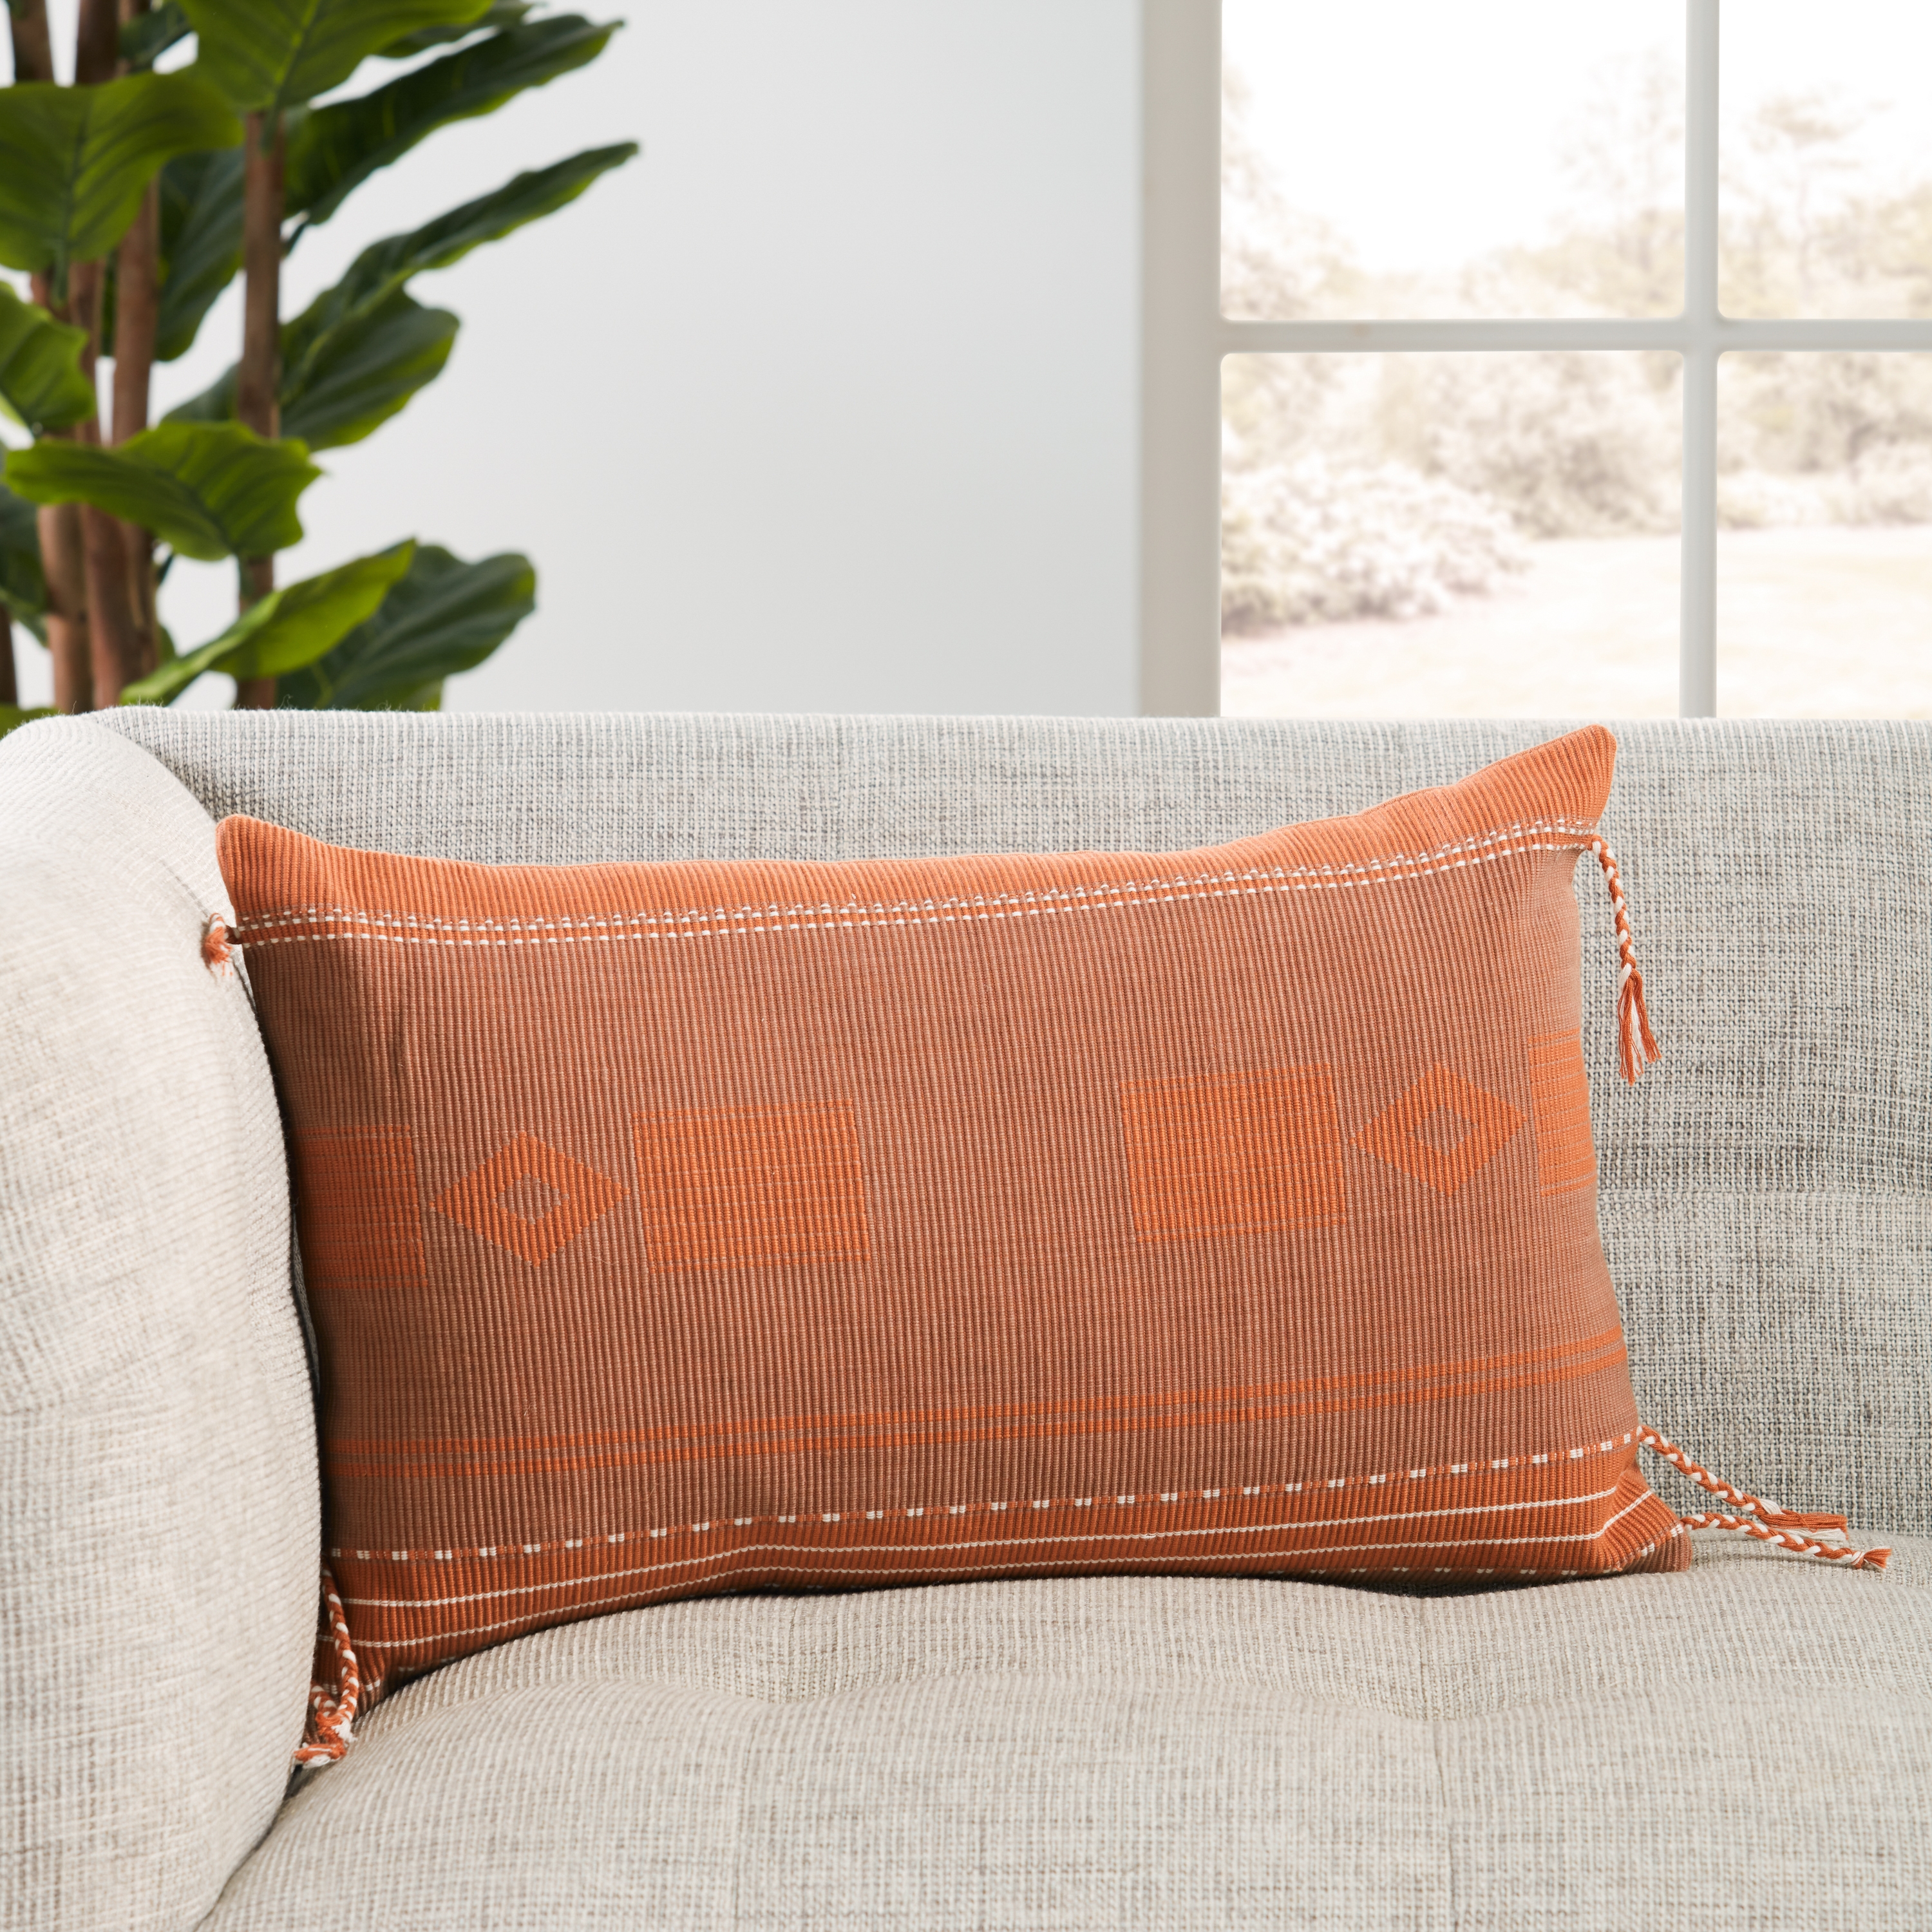 Bohdi Lumbar Pillow, Terracotta, 21" x 13" - Image 3